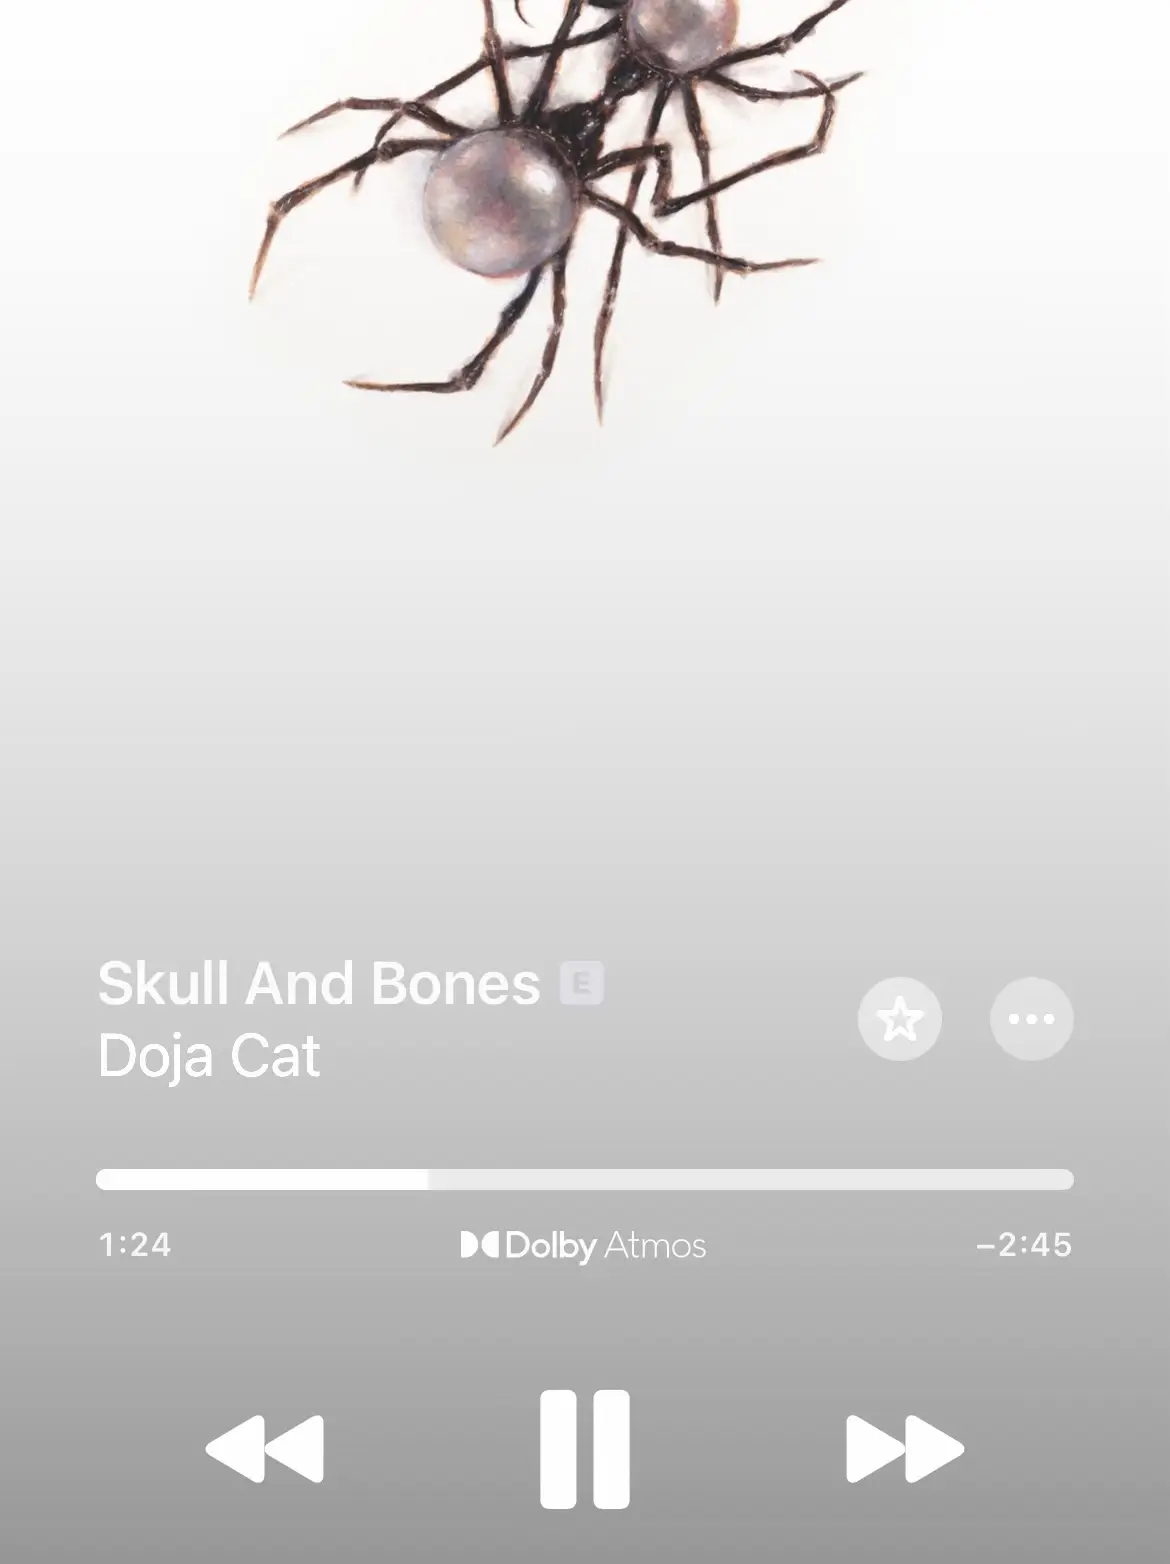 DOJA CAT - Skull and Bones (Dolby Atmos Mix) 